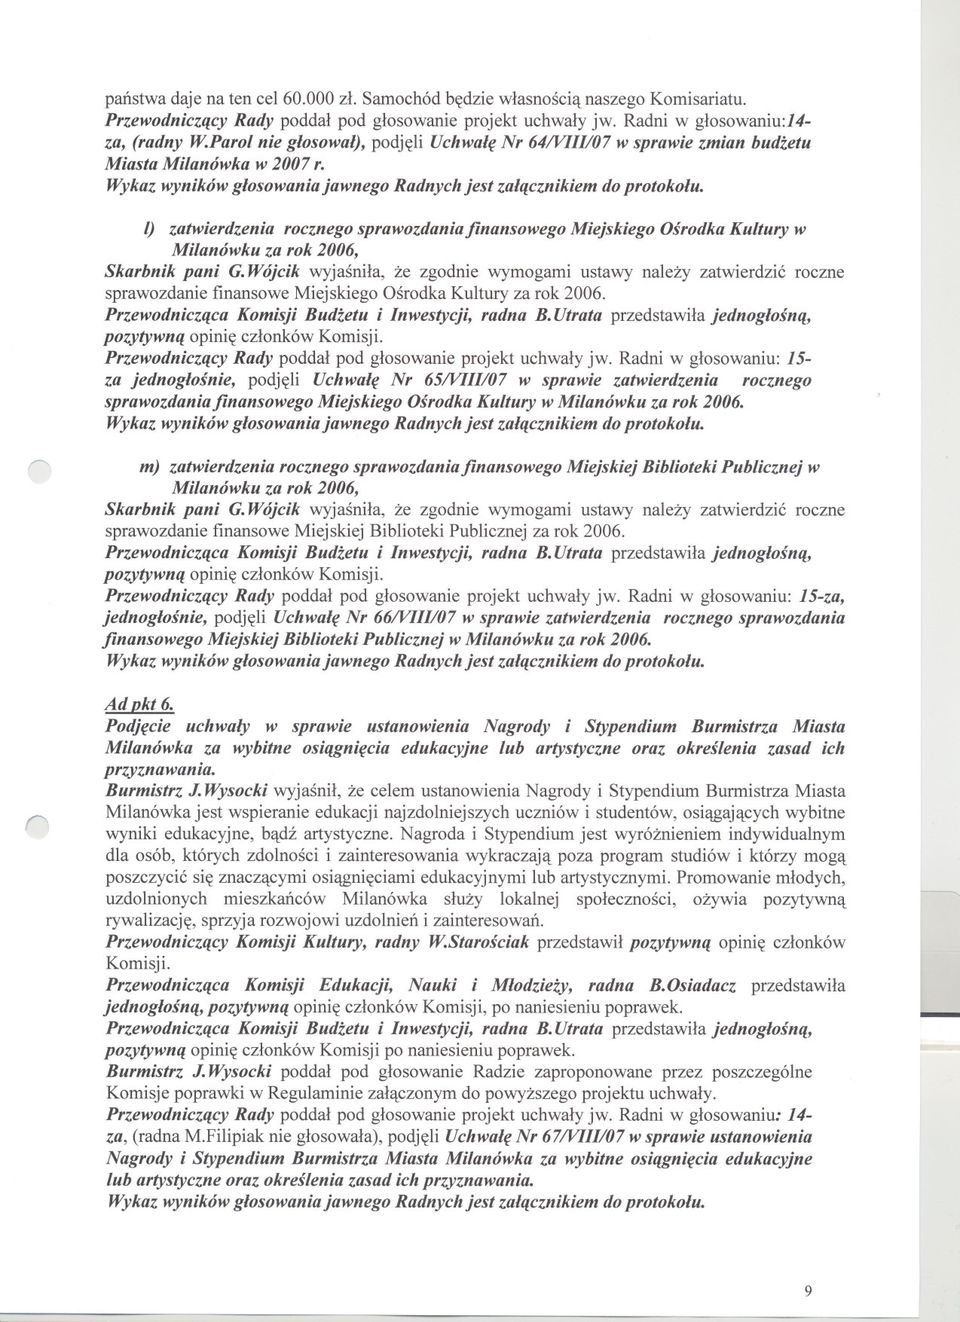 l) zatwierdzenia rocznego sprawozdaniafinansowego Miejskiego Osrodka Kultury w Milanówku za rok 2006, Skarbnik pani G.